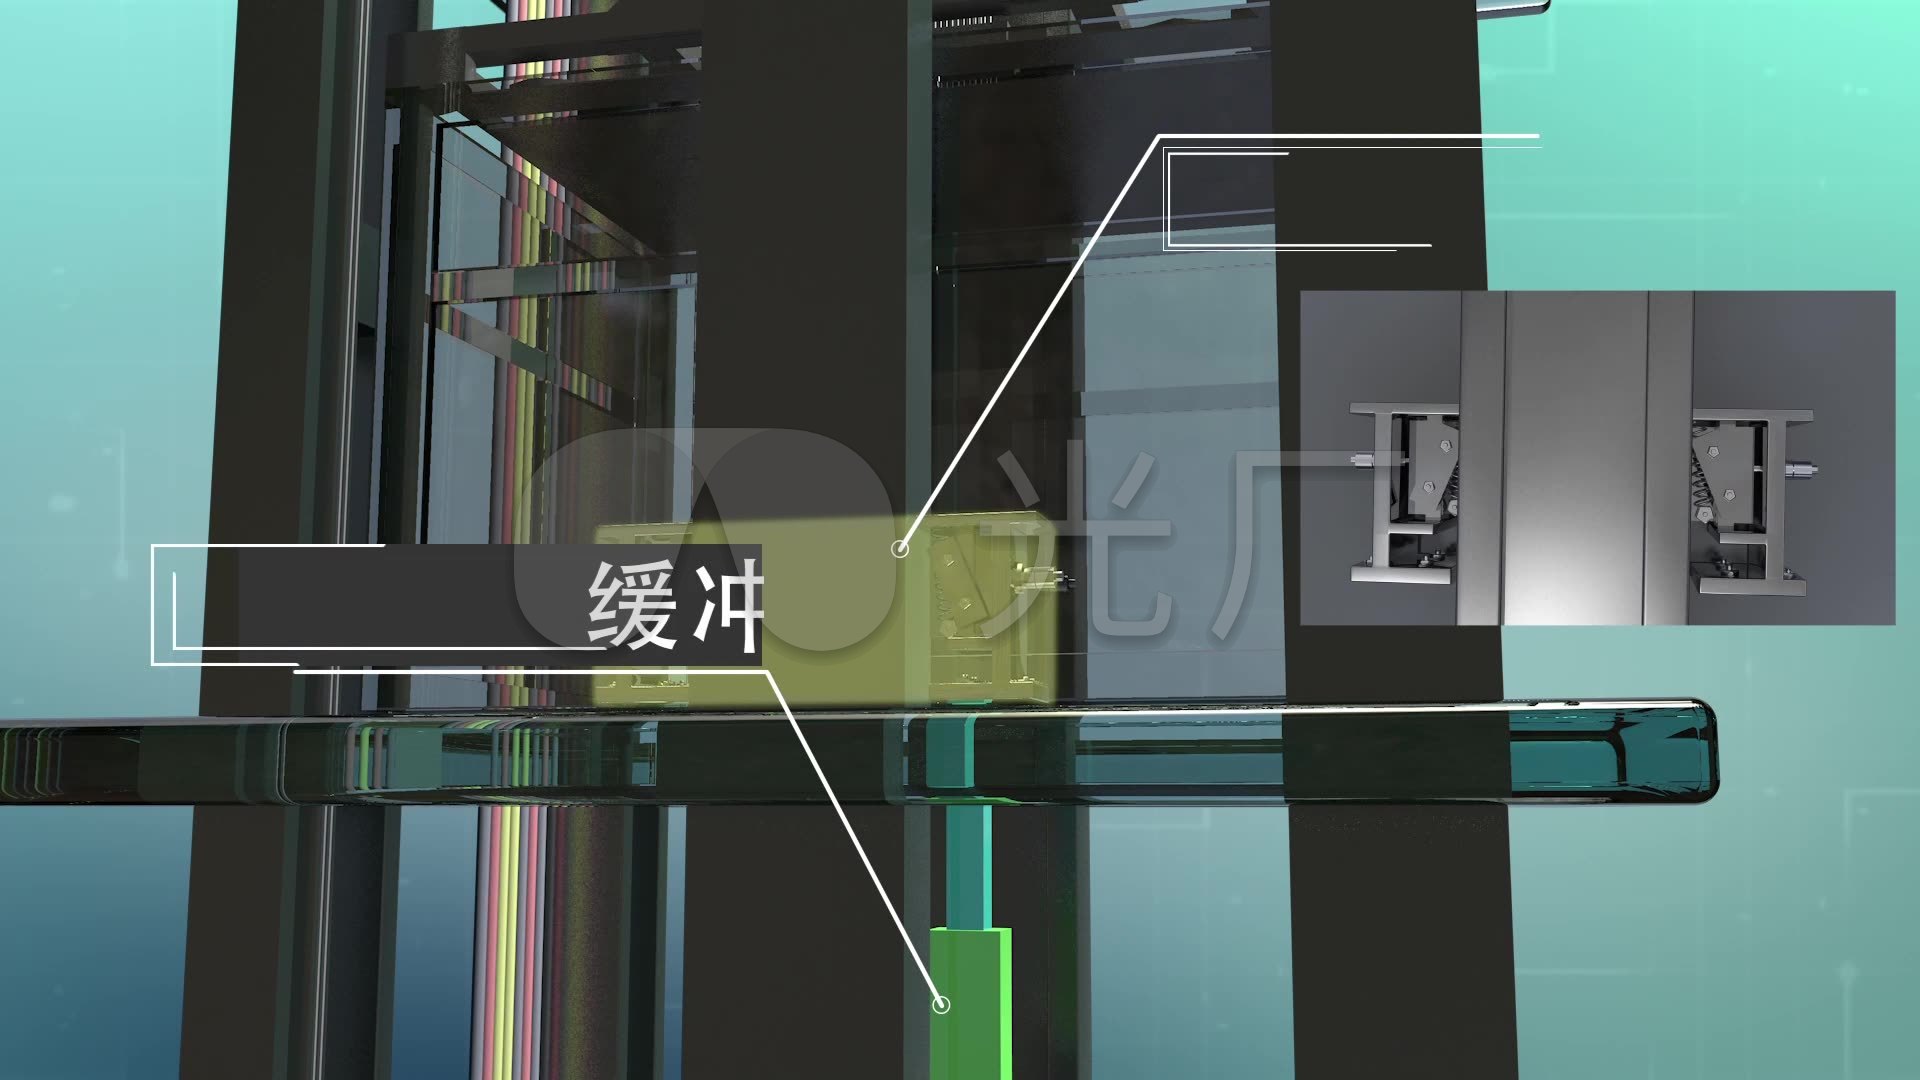 电梯运行原理三维动画